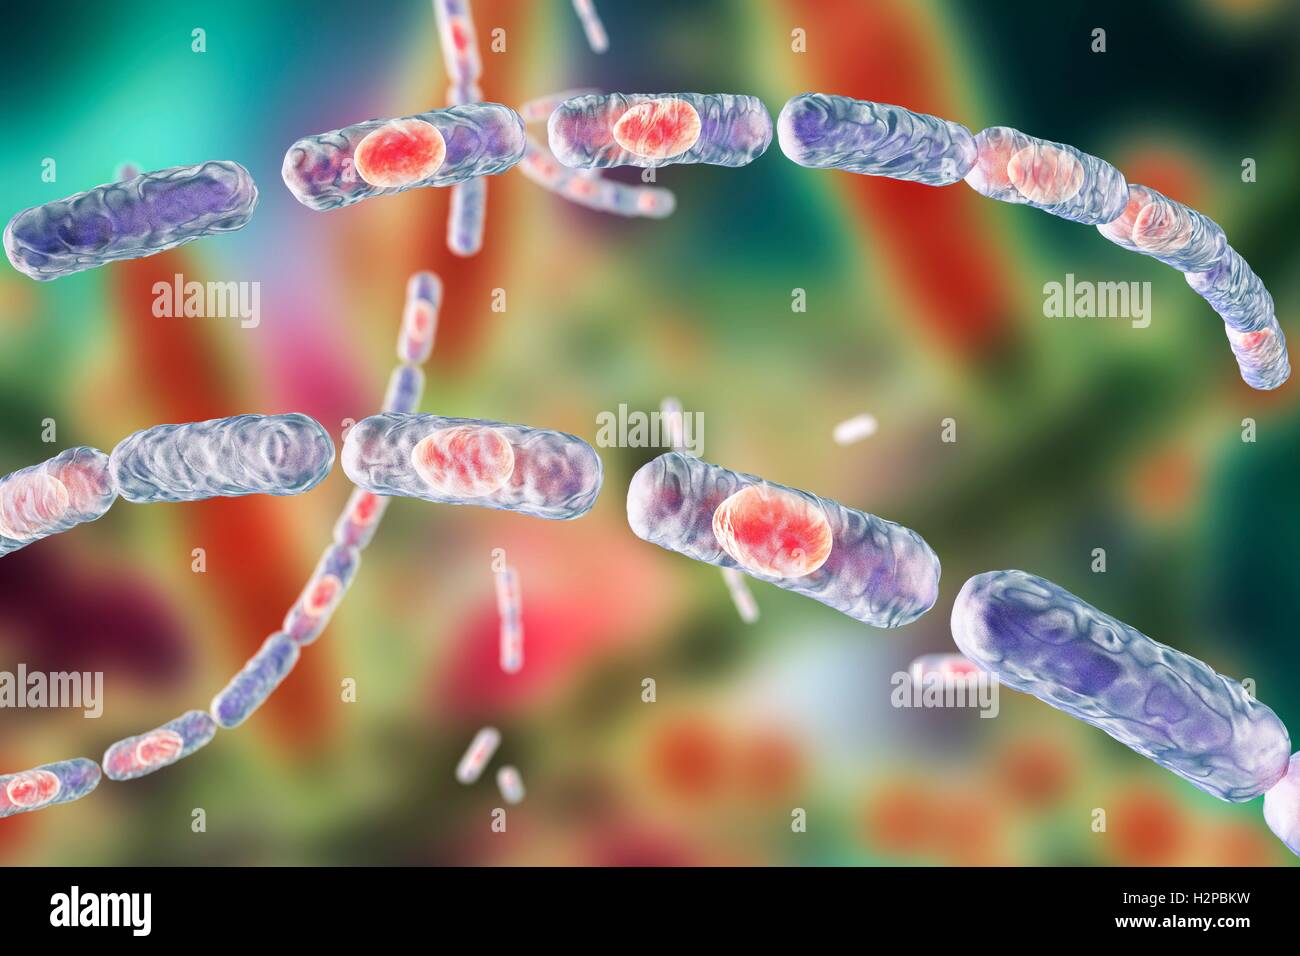 La bactérie du charbon, illustration de l'ordinateur. La bactérie du charbon (Bacillus anthracis) sont la cause de la maladie de l'anthrax dans l'homme et le bétail. Ils sont Gram positif bactéries productrices de spores disposées en chaînes (streptobacilli). De nombreuses cellules ont un spore (rouge). Banque D'Images